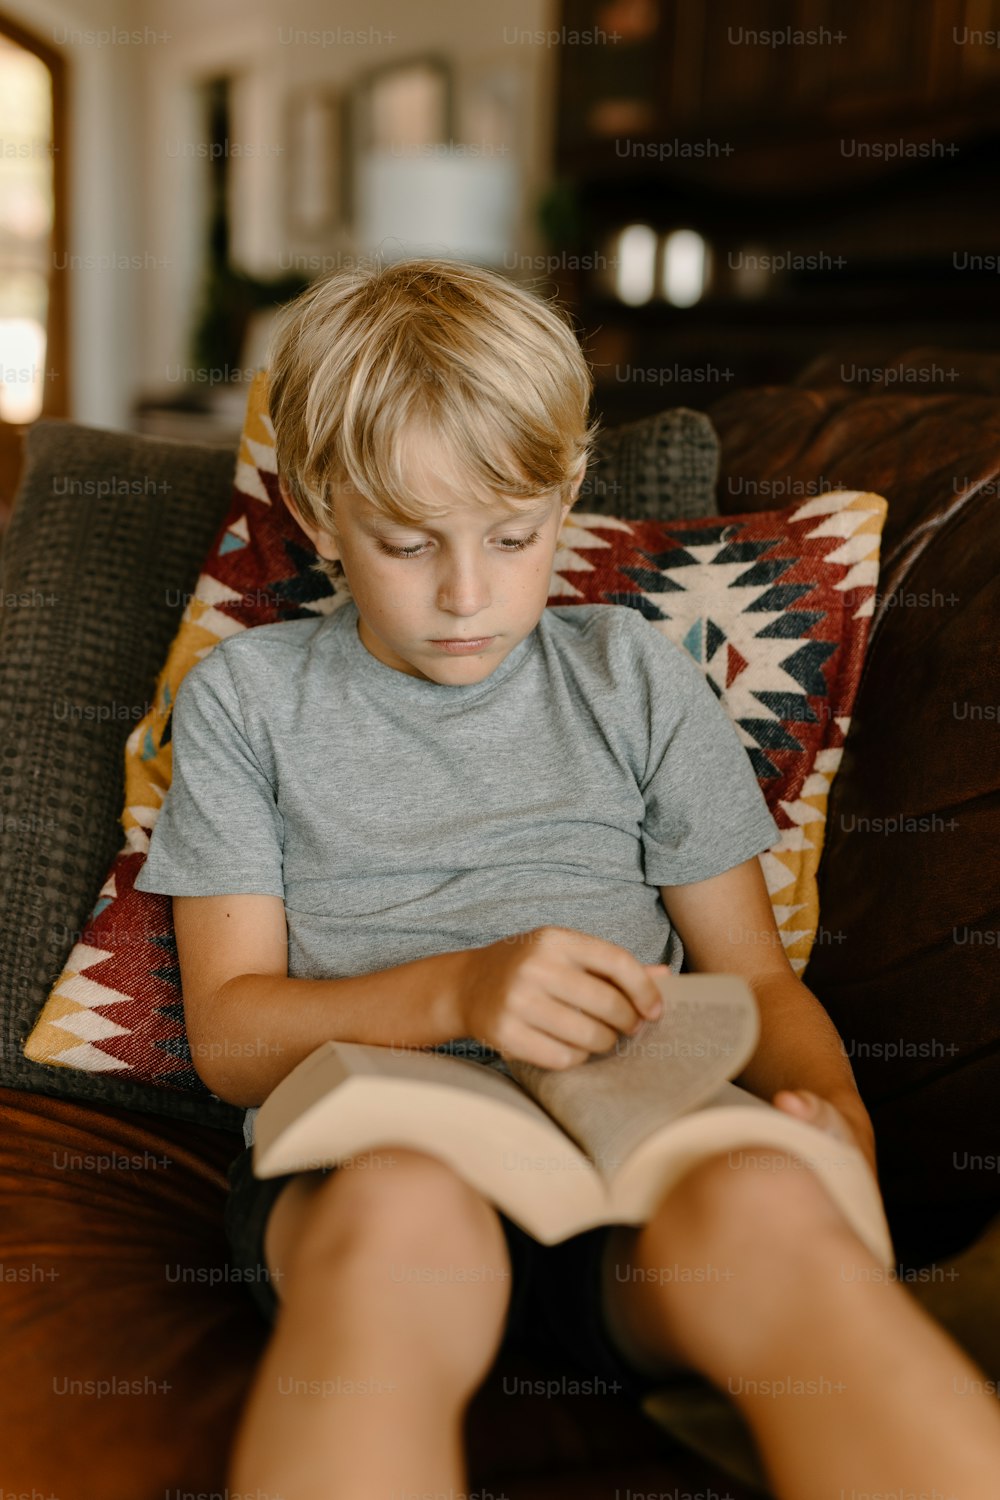 Un giovane ragazzo seduto su un divano che legge un libro